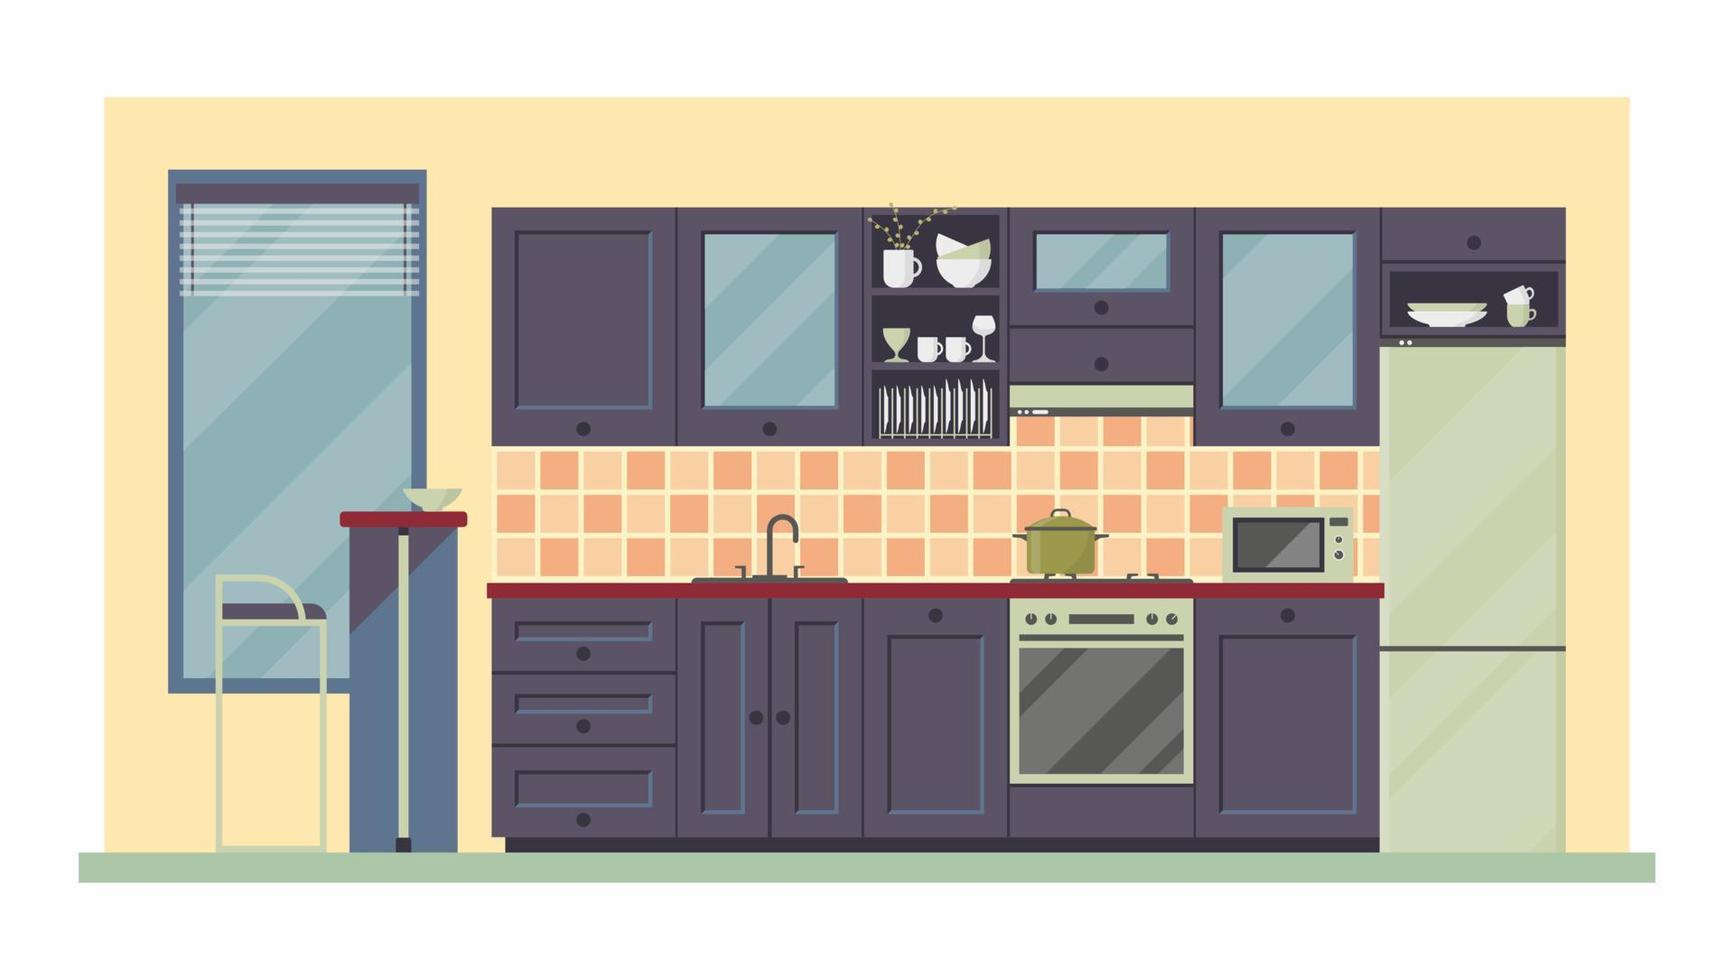 ilustración plana vectorial, interior de cocina moderna. muebles, menaje y utensilio de cocina. equipo de preparación de alimentos, electrodomésticos vector